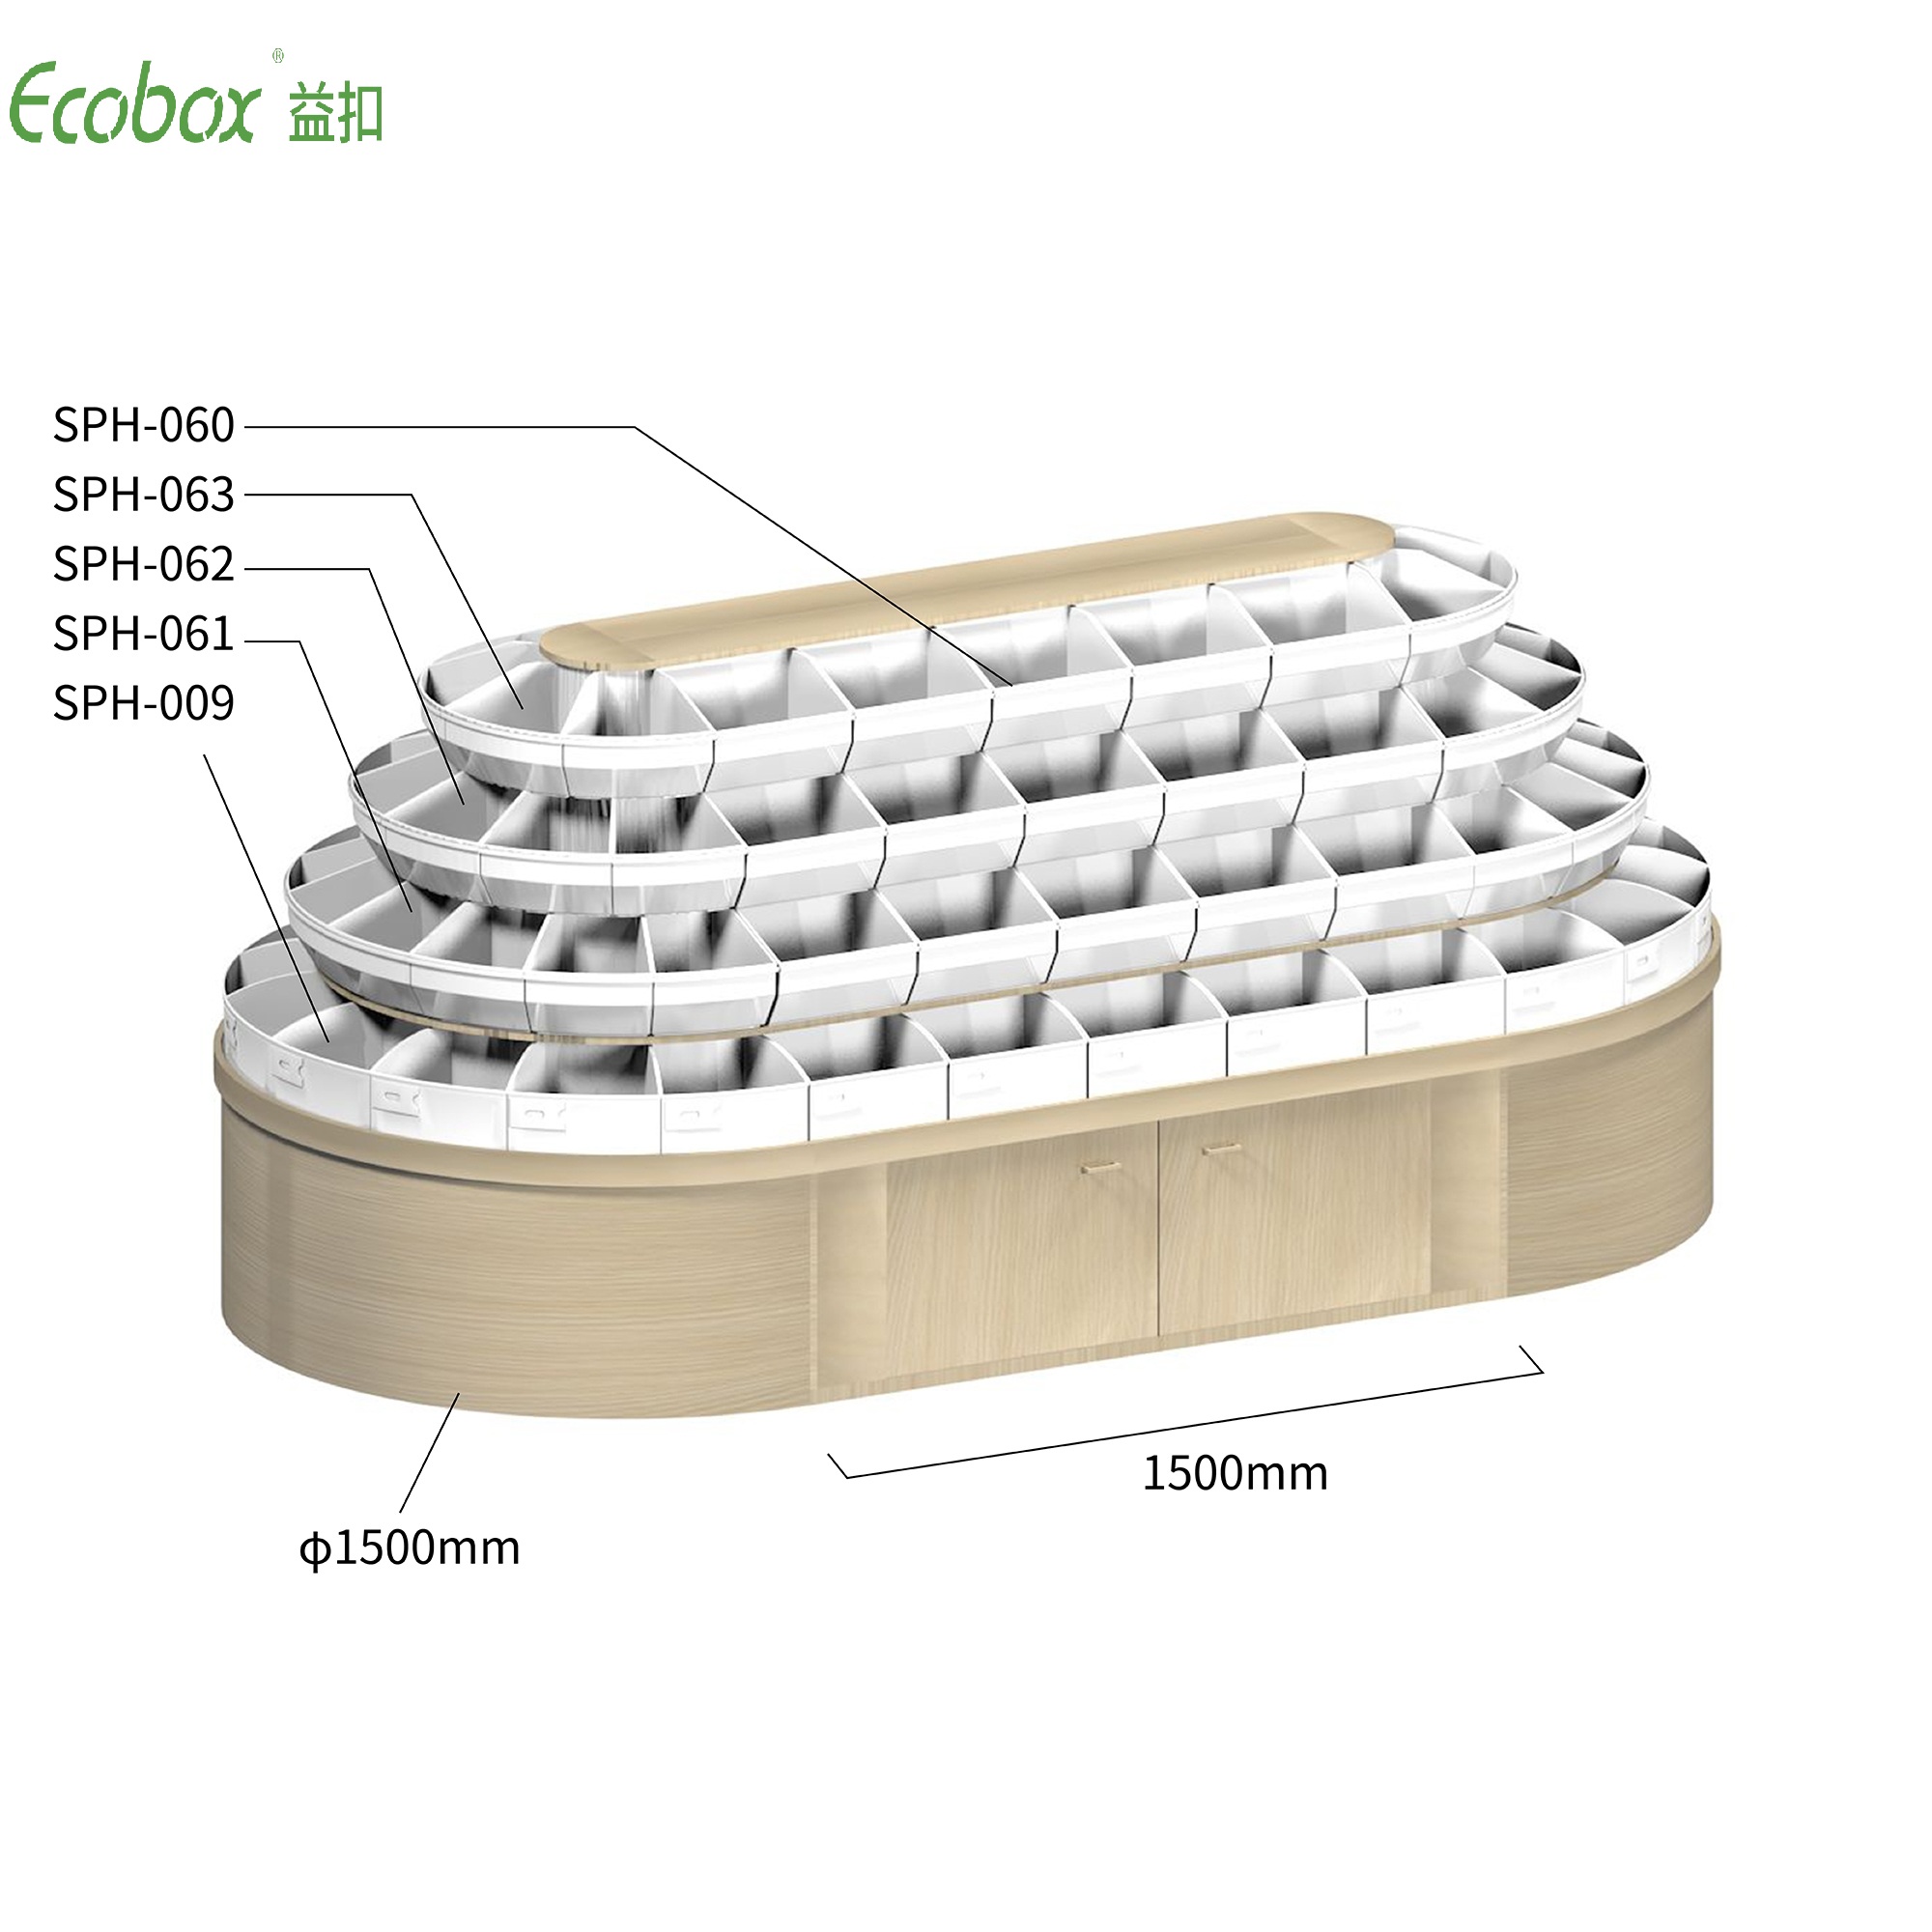 Rundes Regal der Ecobox G008-Serie mit Ecobox-Großbehältern für Supermarkt-Großlebensmitteldisplays